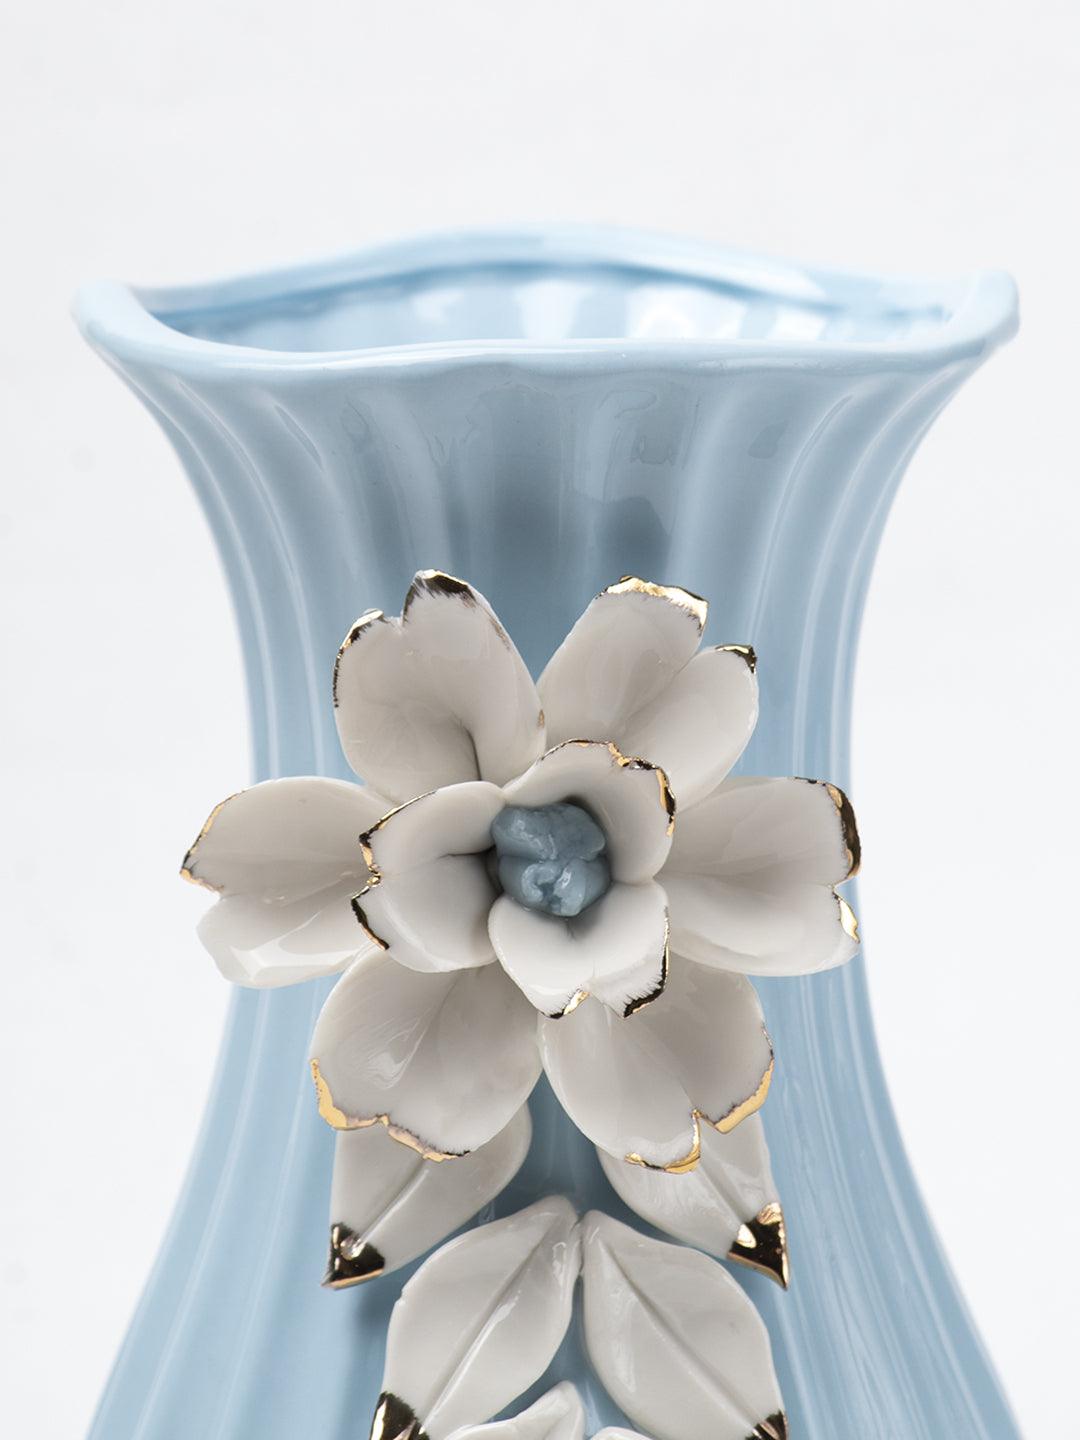 Blue Ceramic Curvy Vase - Engraved Floral Pattern, Flower Holder - 5